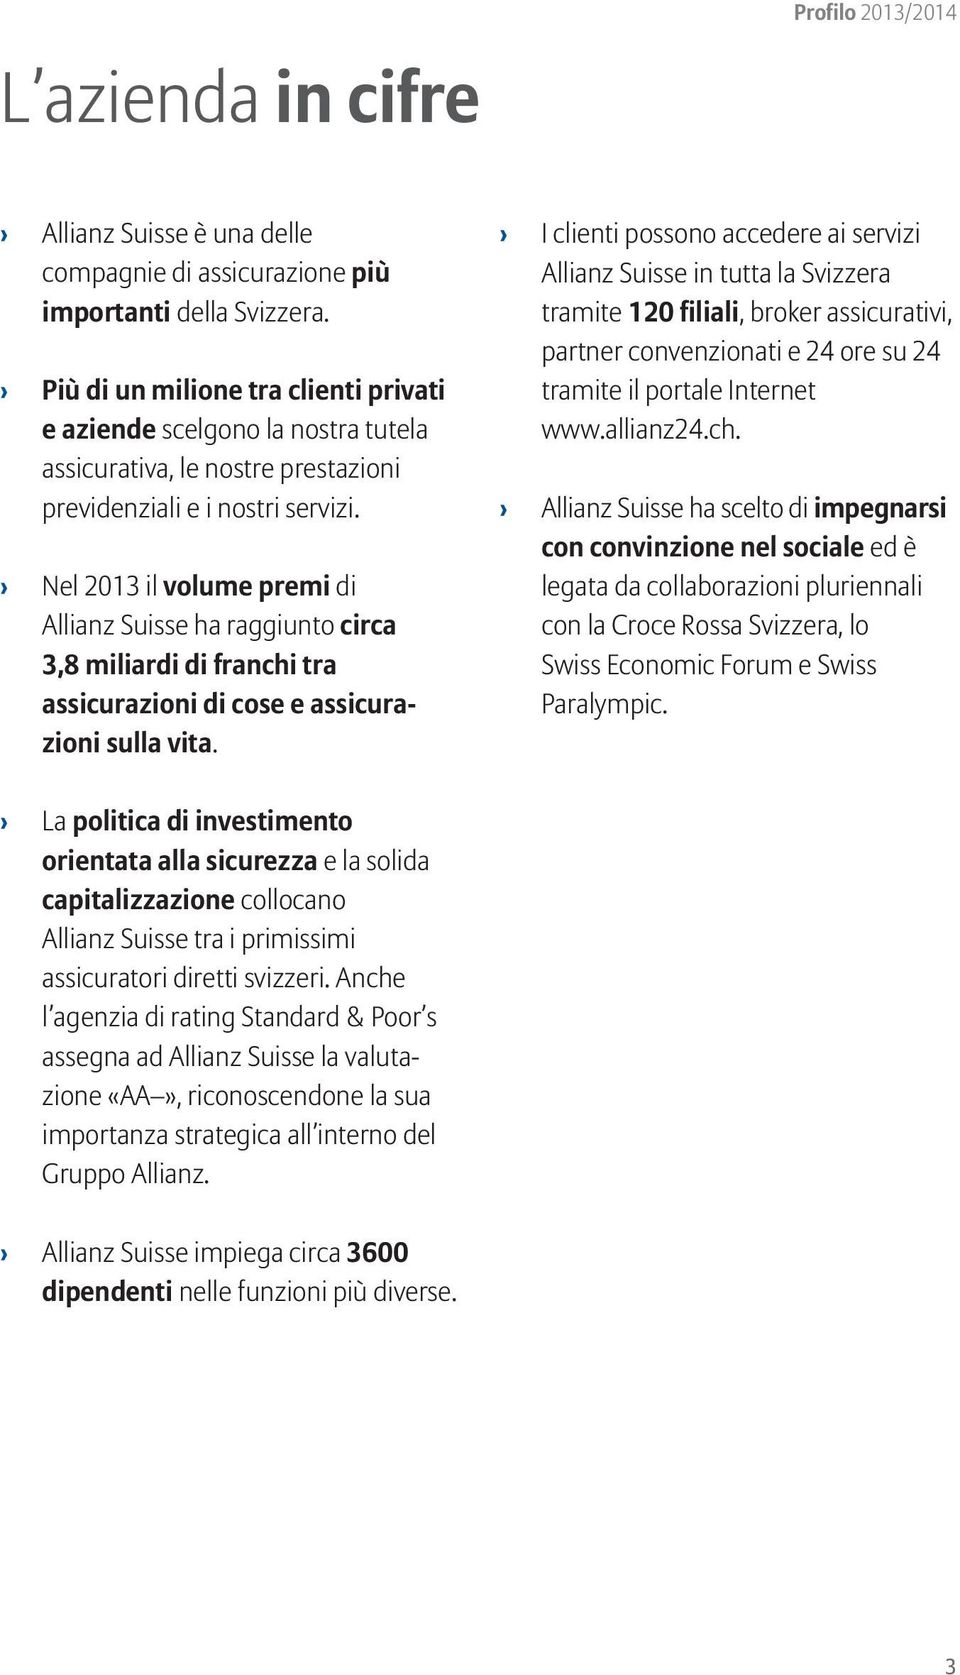 Nel 2013 il volume premi di Allianz Suisse ha raggiunto circa 3,8 miliardi di franchi tra assicurazioni di cose e assicurazioni sulla vita.